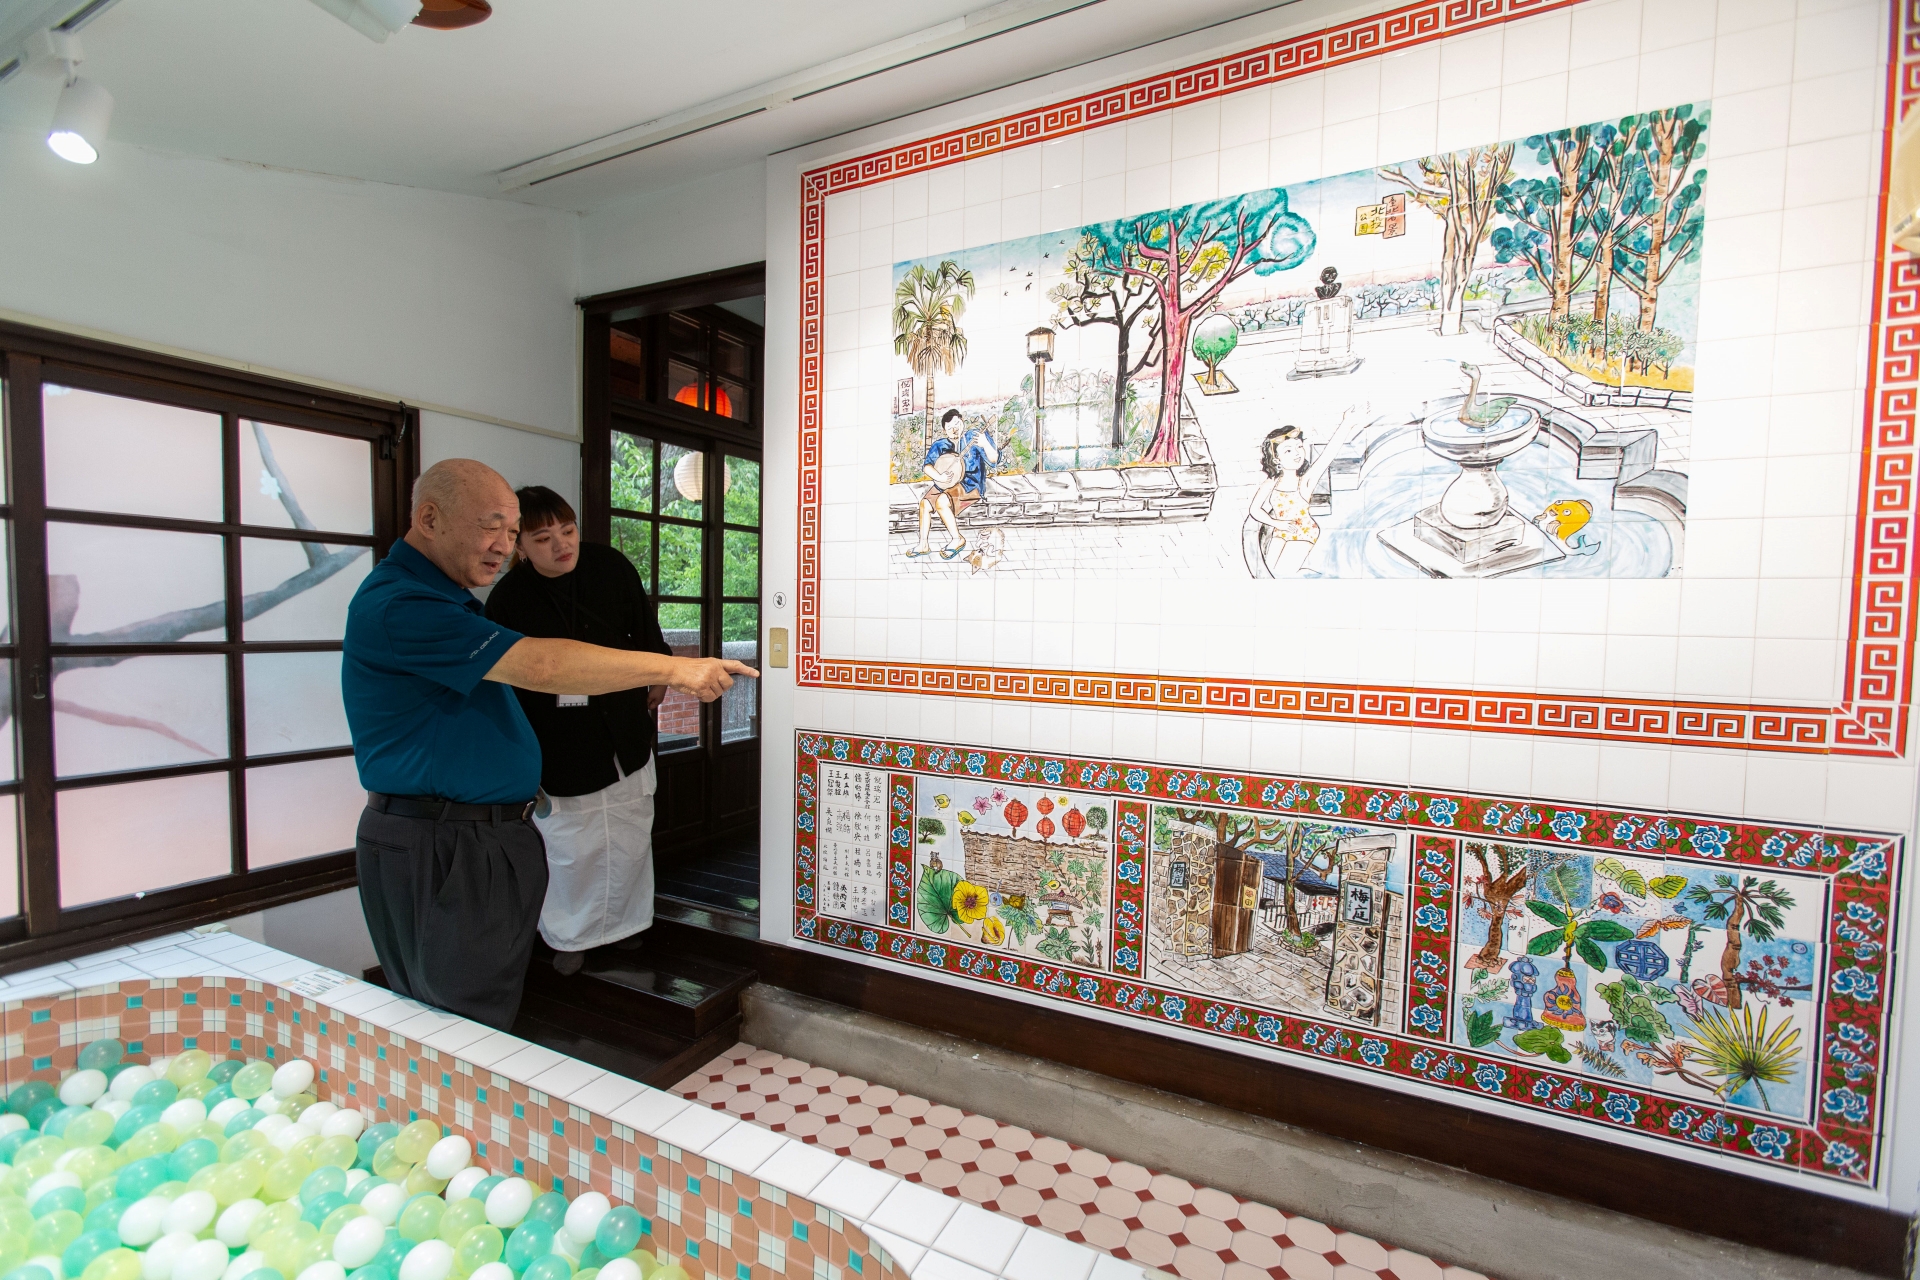 北投梅庭的私人溫泉浴室在藝術家倪瑞宏、國寶彩磁藝師和在地區民創作下 ，讓溫泉浴室溫度再現。圖/台北市文化局提供